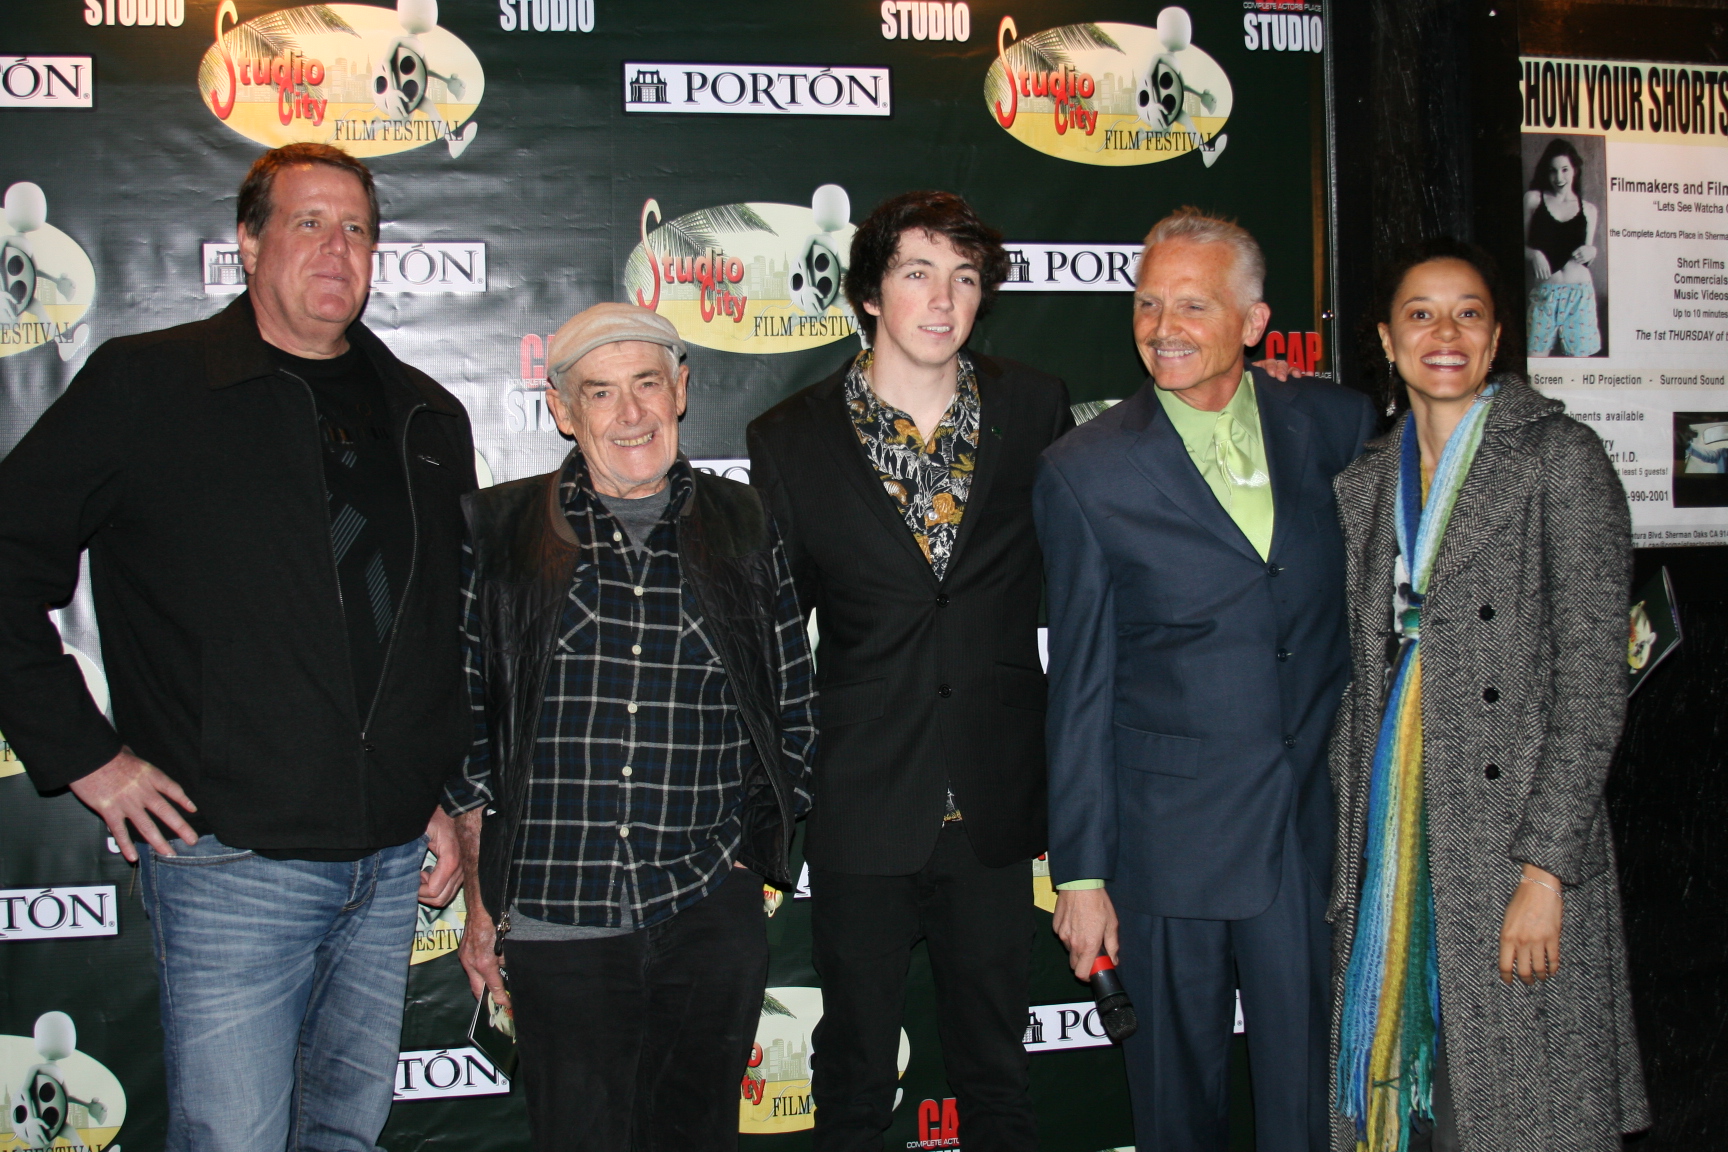 With Mario Del Bello, Bob Weiner, Christopher Delgado and Jamie Burton-Oare at the 2013 Studio City Film Festival.